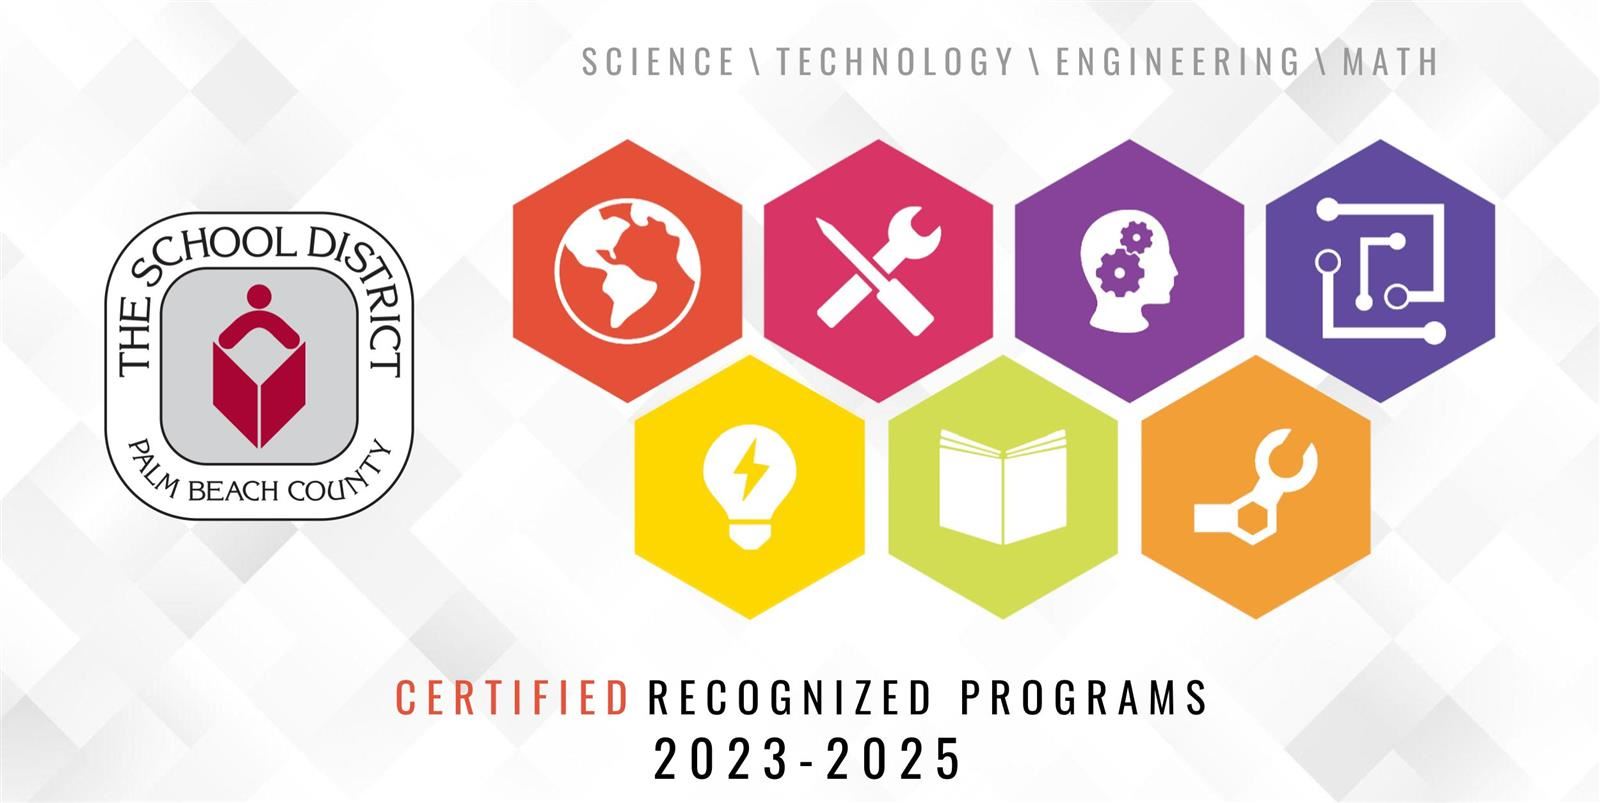 STEM Certified Recognized Programs 2023-2025